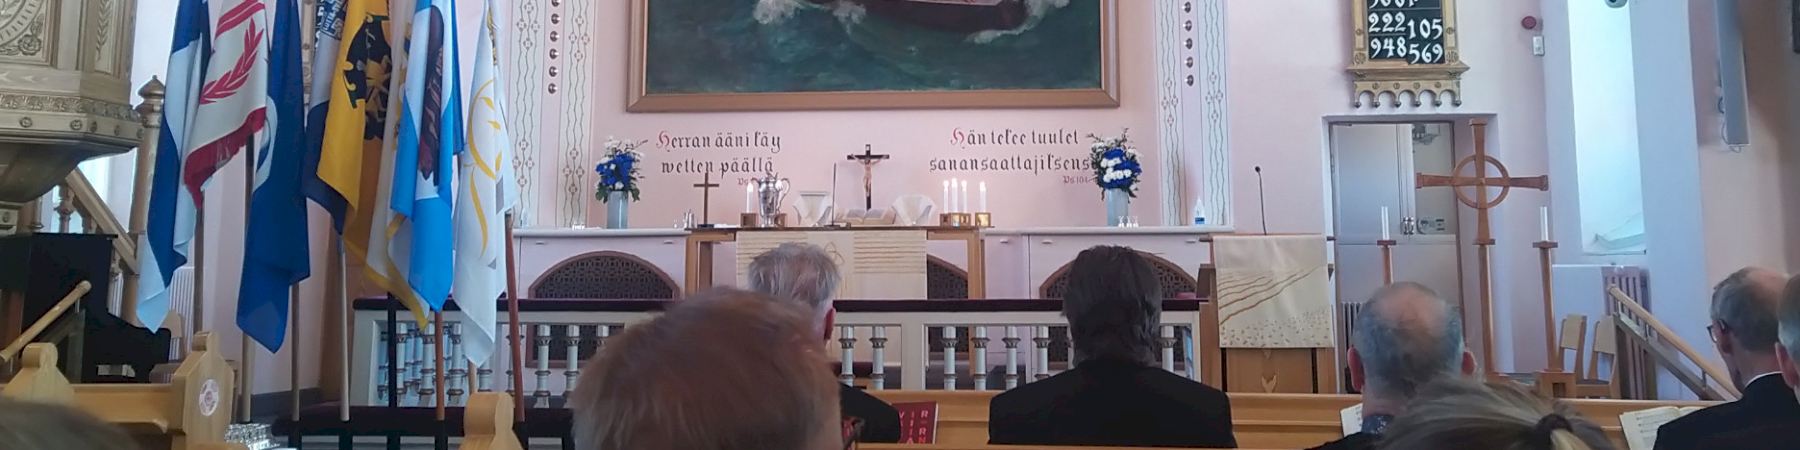 Oulun piirin kirkkopyhä Raahessa perinteitä kunnioittaen